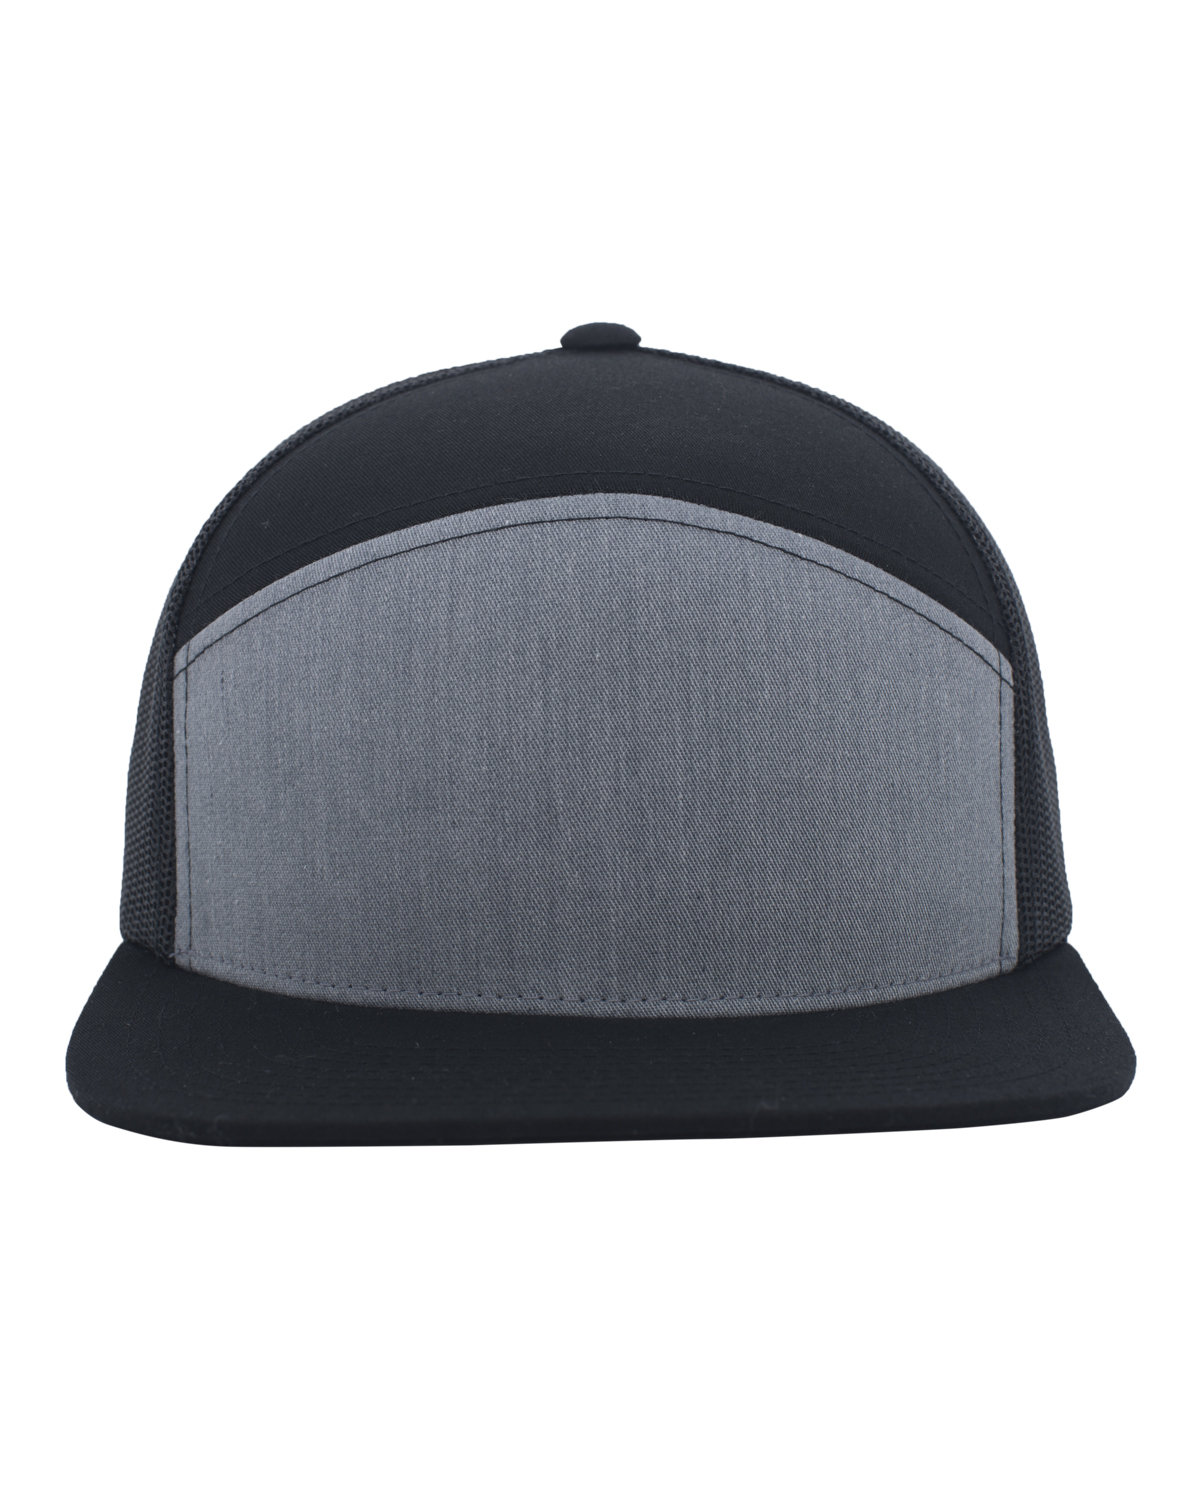 Arch Trucker Snapback Cap-Pacific Headwear